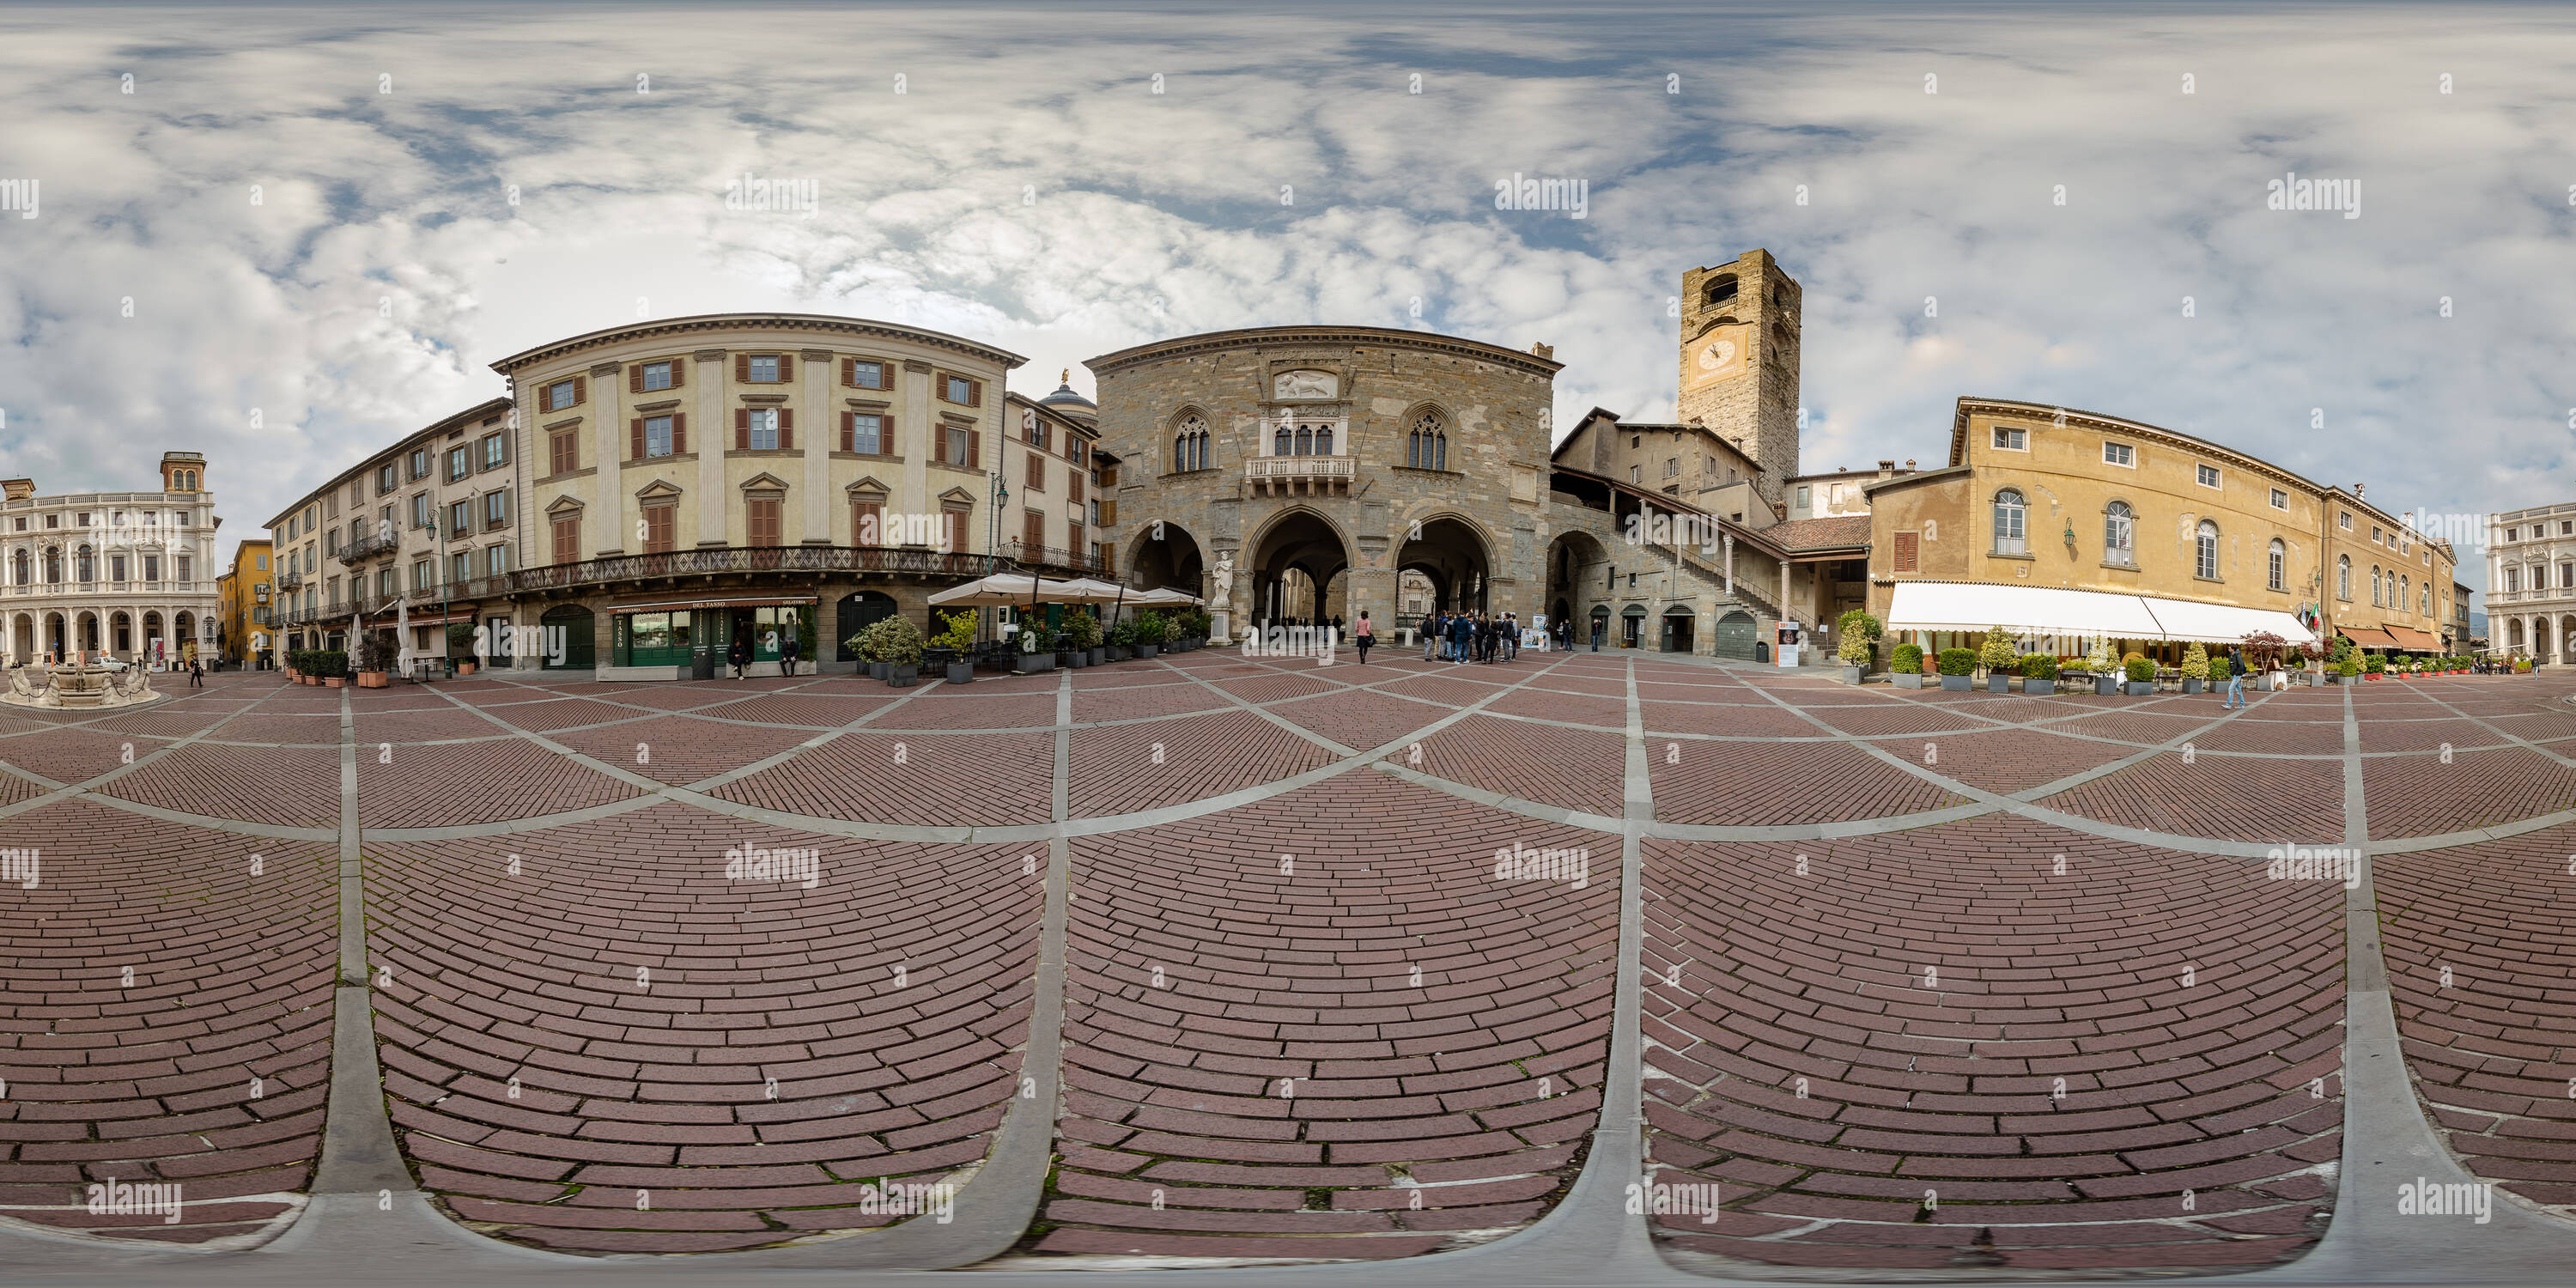 Vue panoramique à 360° de Bergame. La Piazza Vecchia.